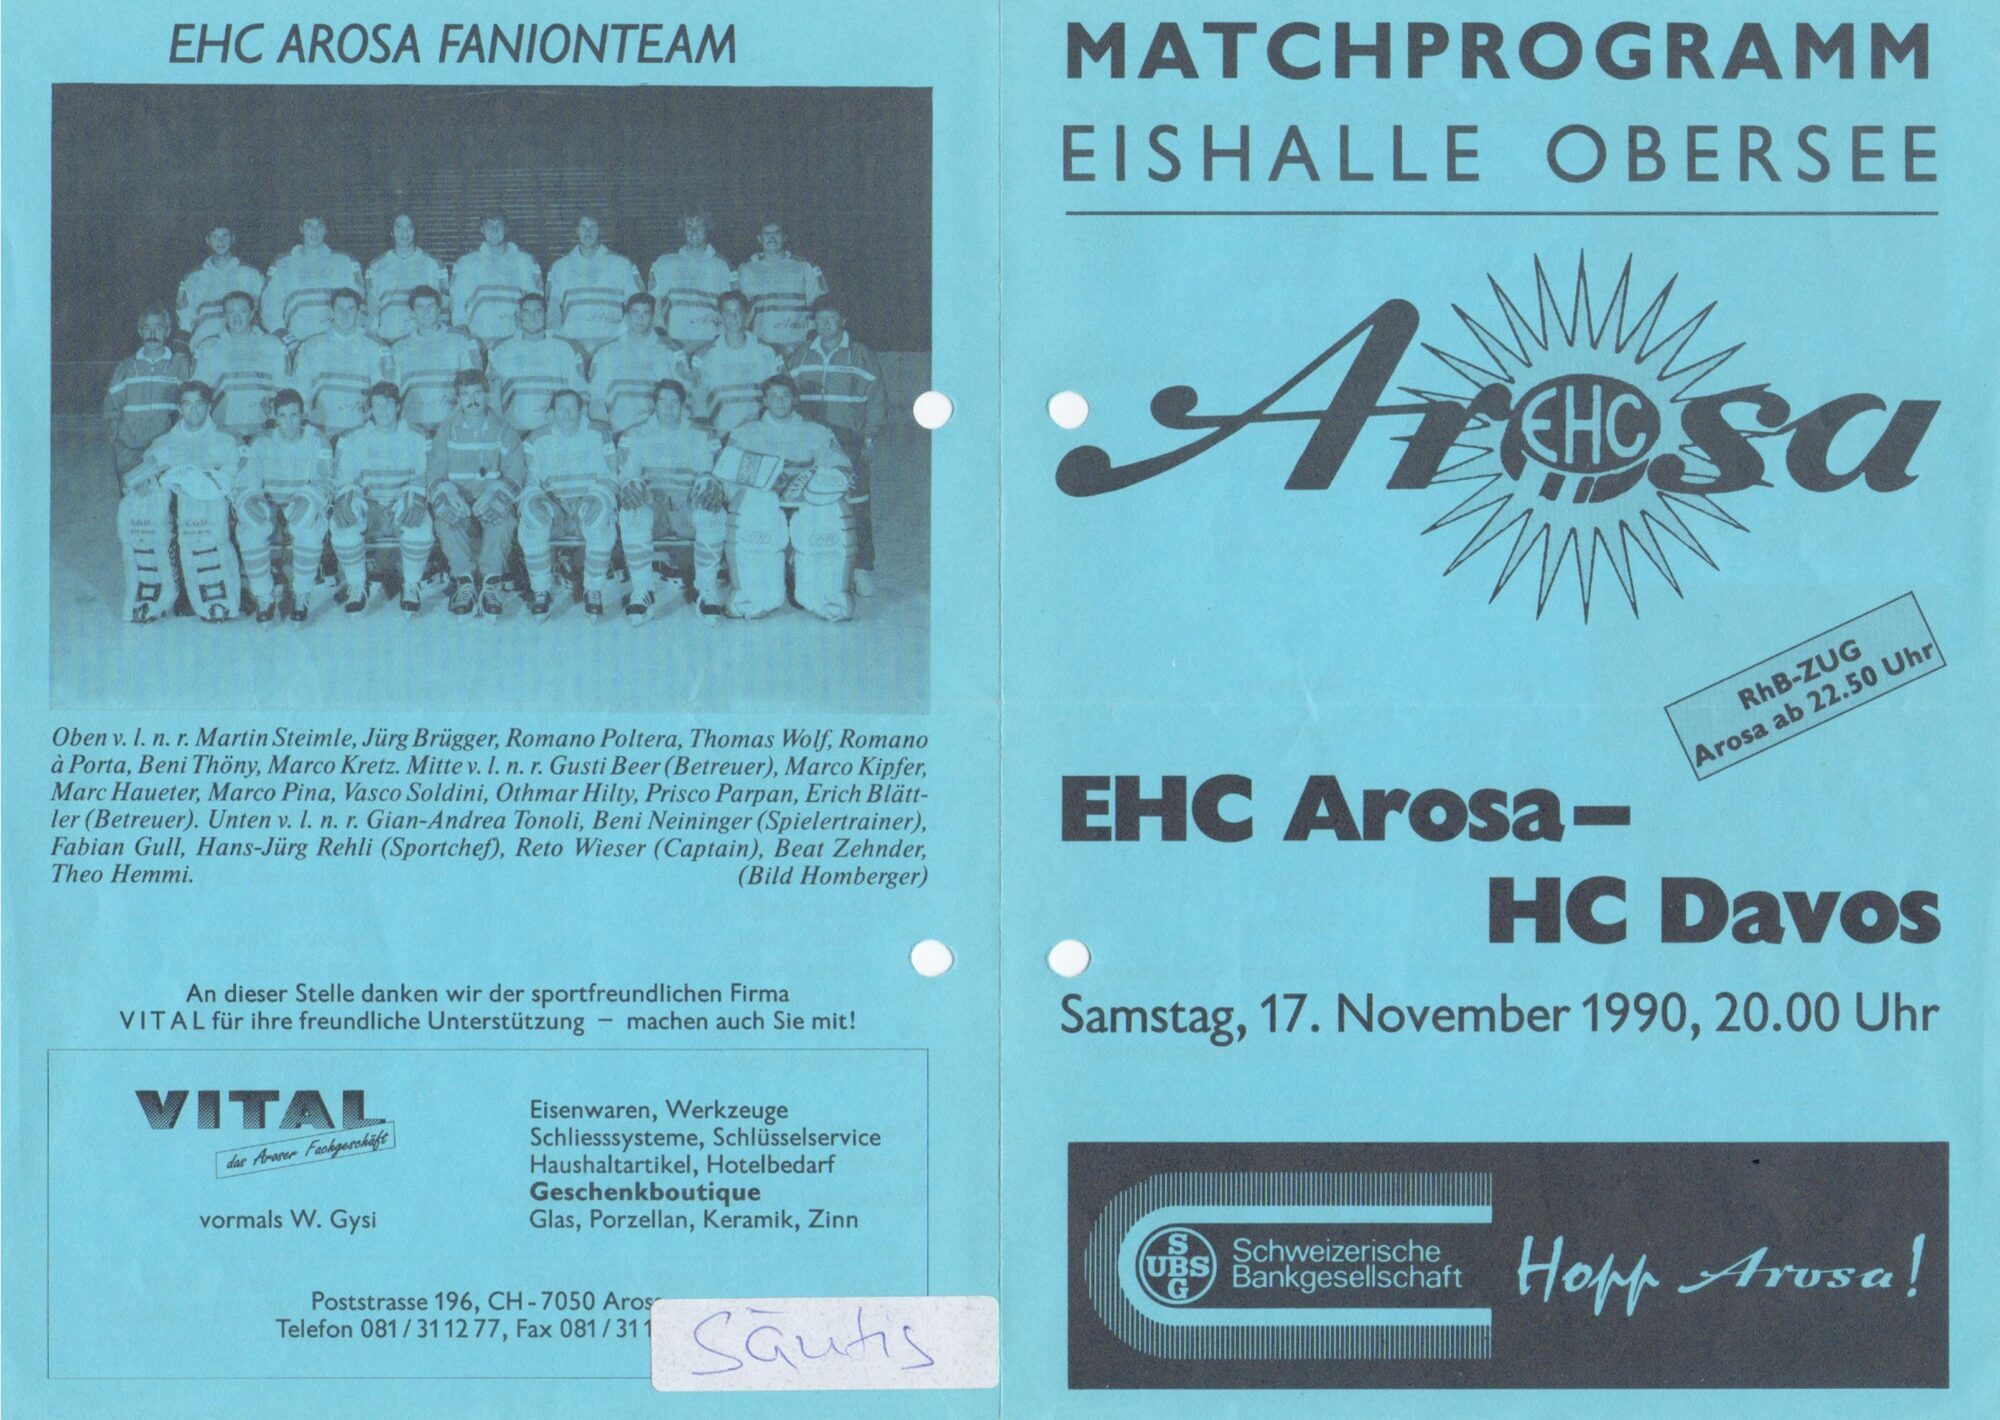 Das Matchprogramm des letzten Bündner Derbies in Arosa zwischen dem EHC Arosa und dem HC Davos.